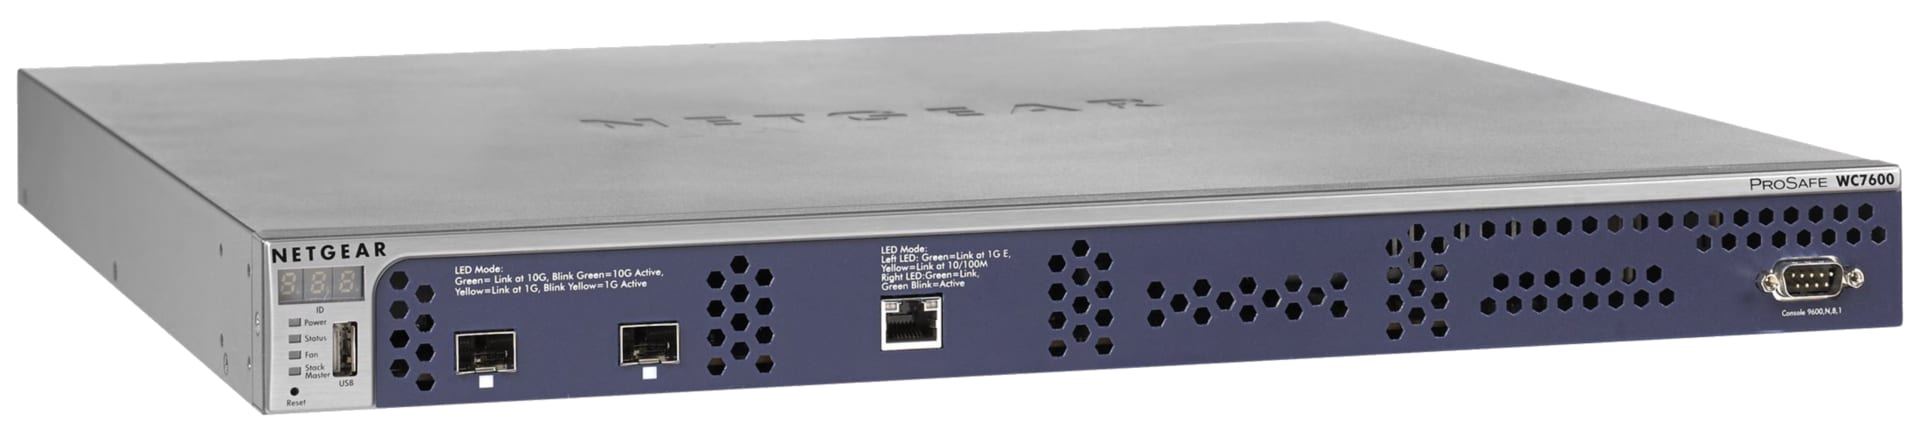 NETGEAR Wireless Lan Controller- Enterprise Class, High Perf. (WC7600)